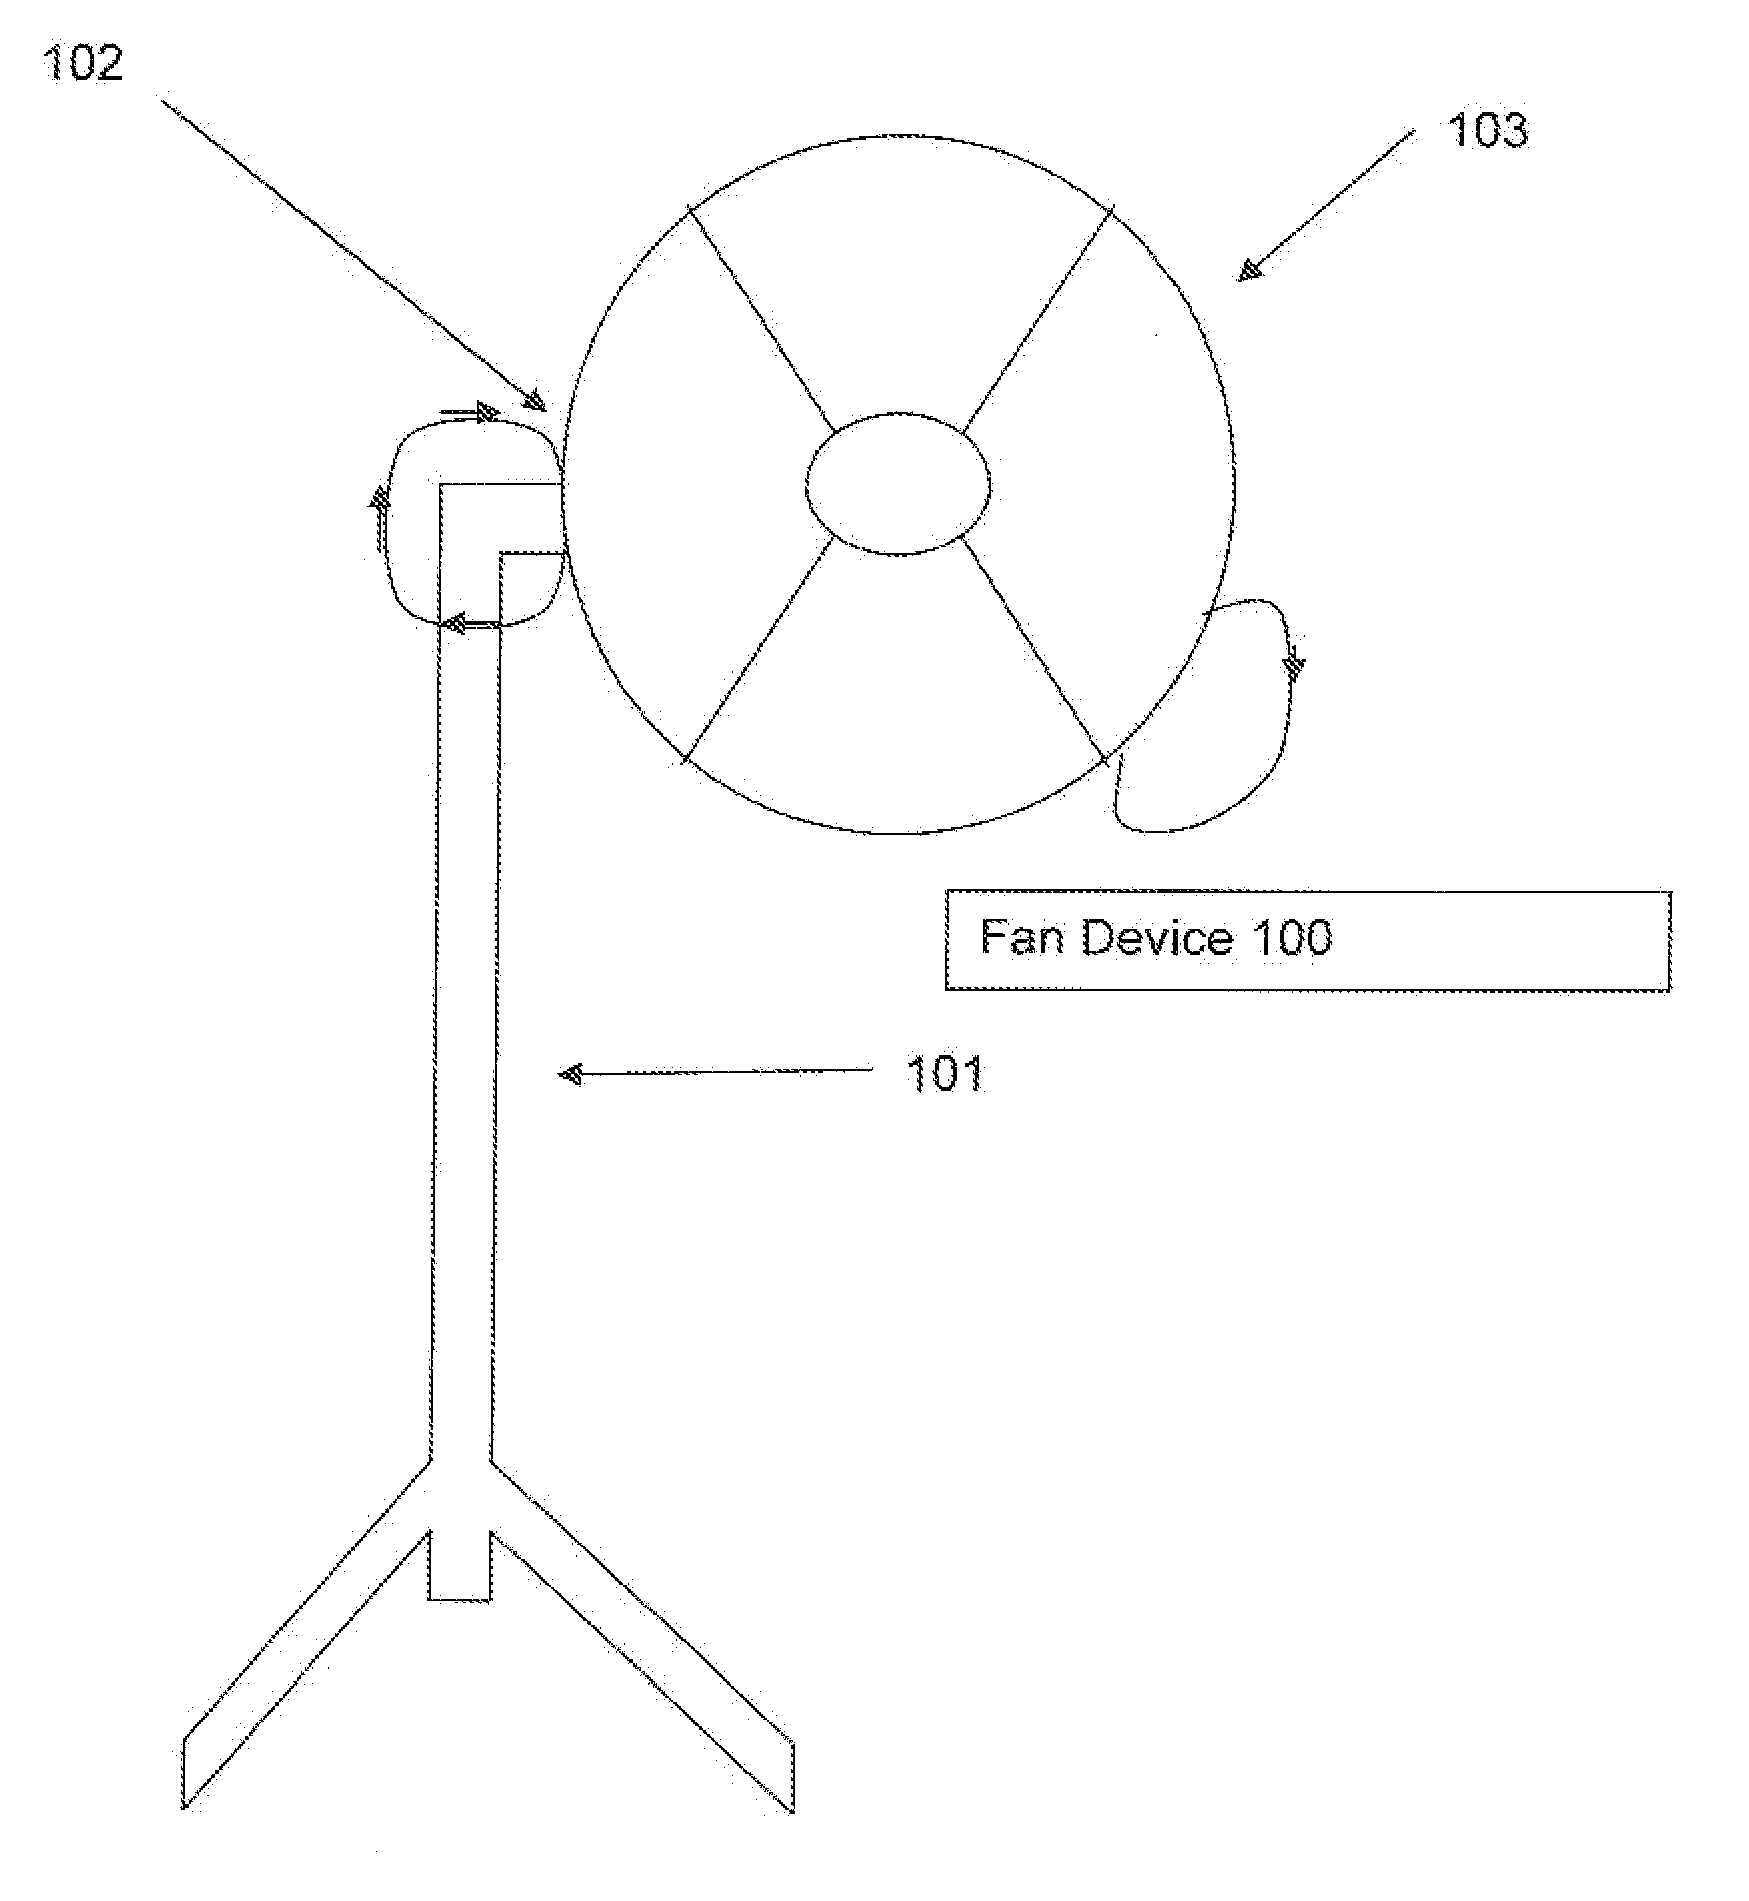 Omni-directional fan device